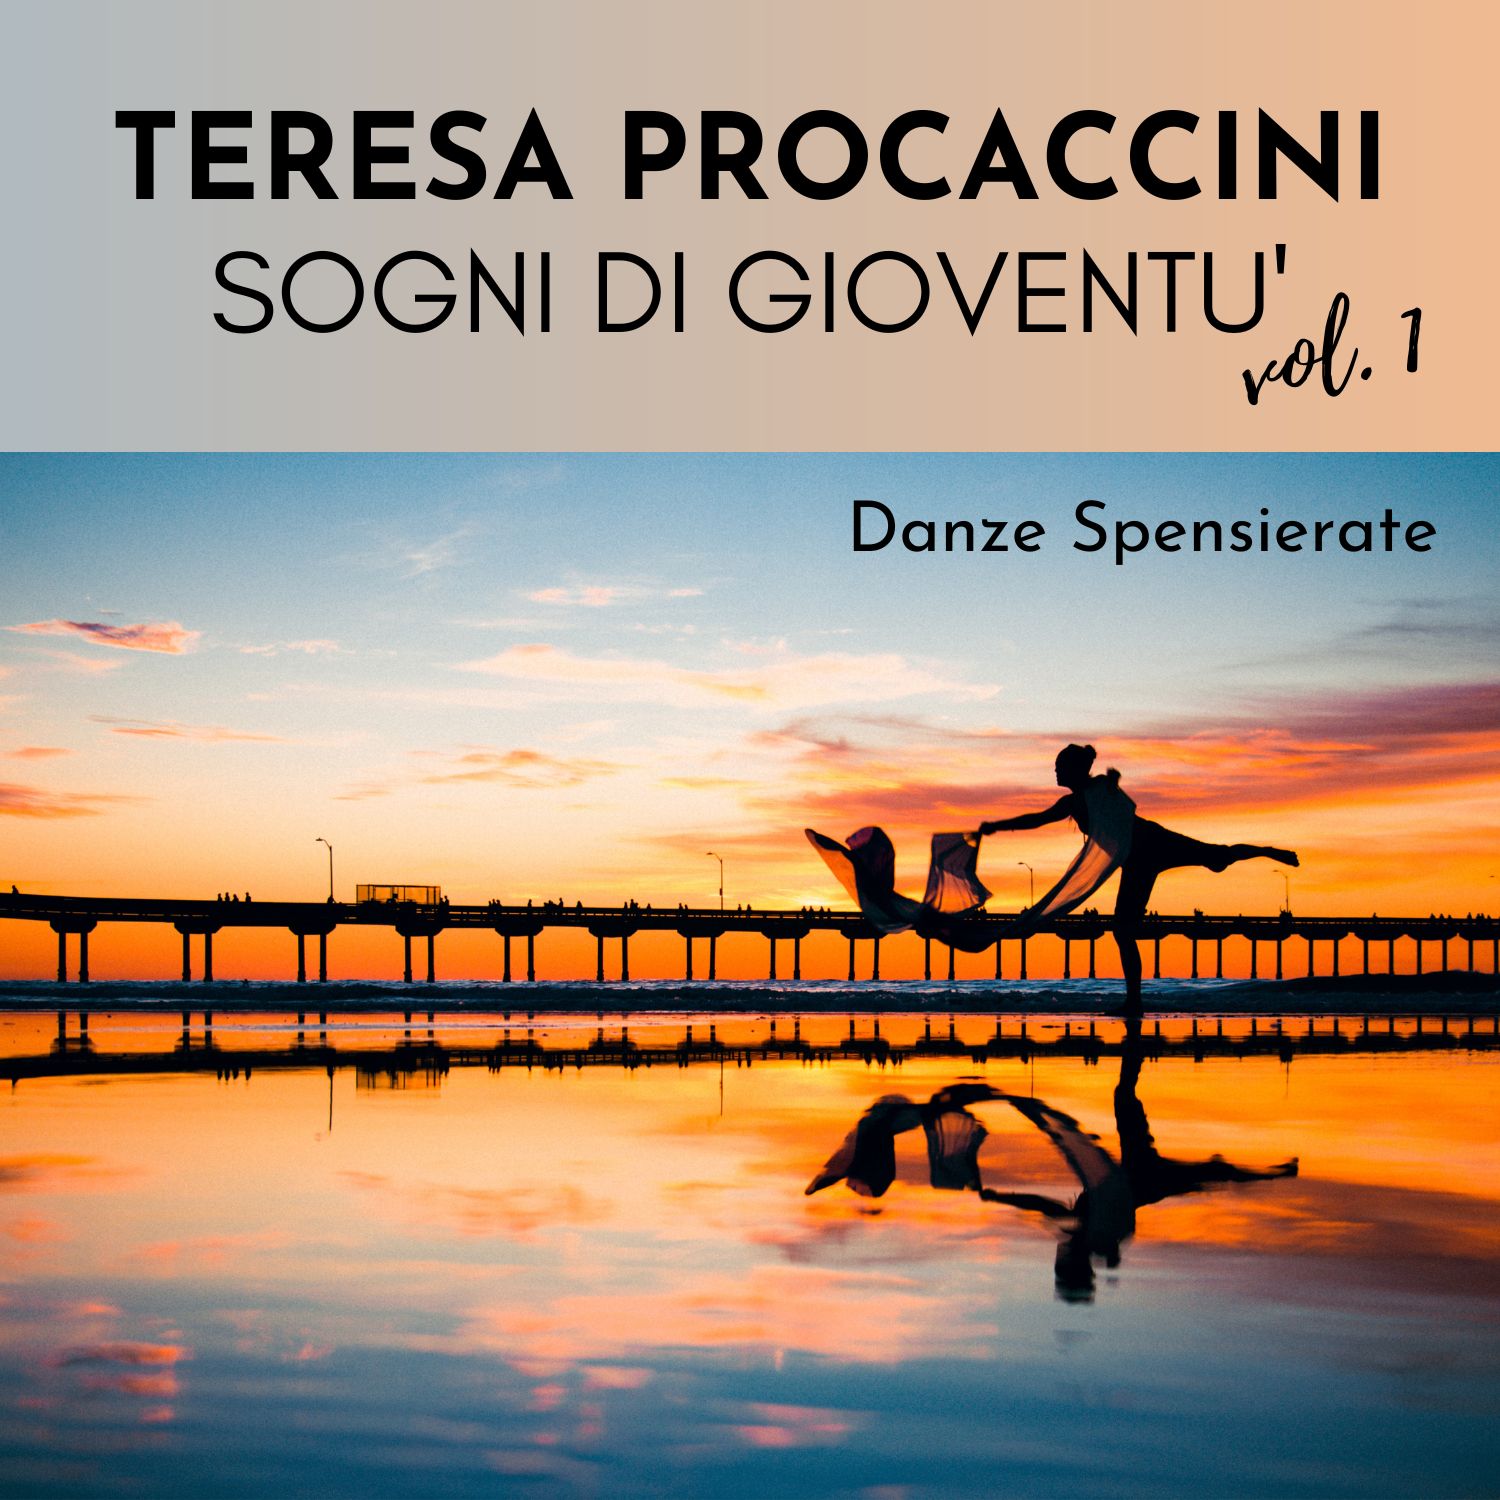 Teresa Procaccini: Sogni di gioventù, Vol. 1 (Danze spensierate)